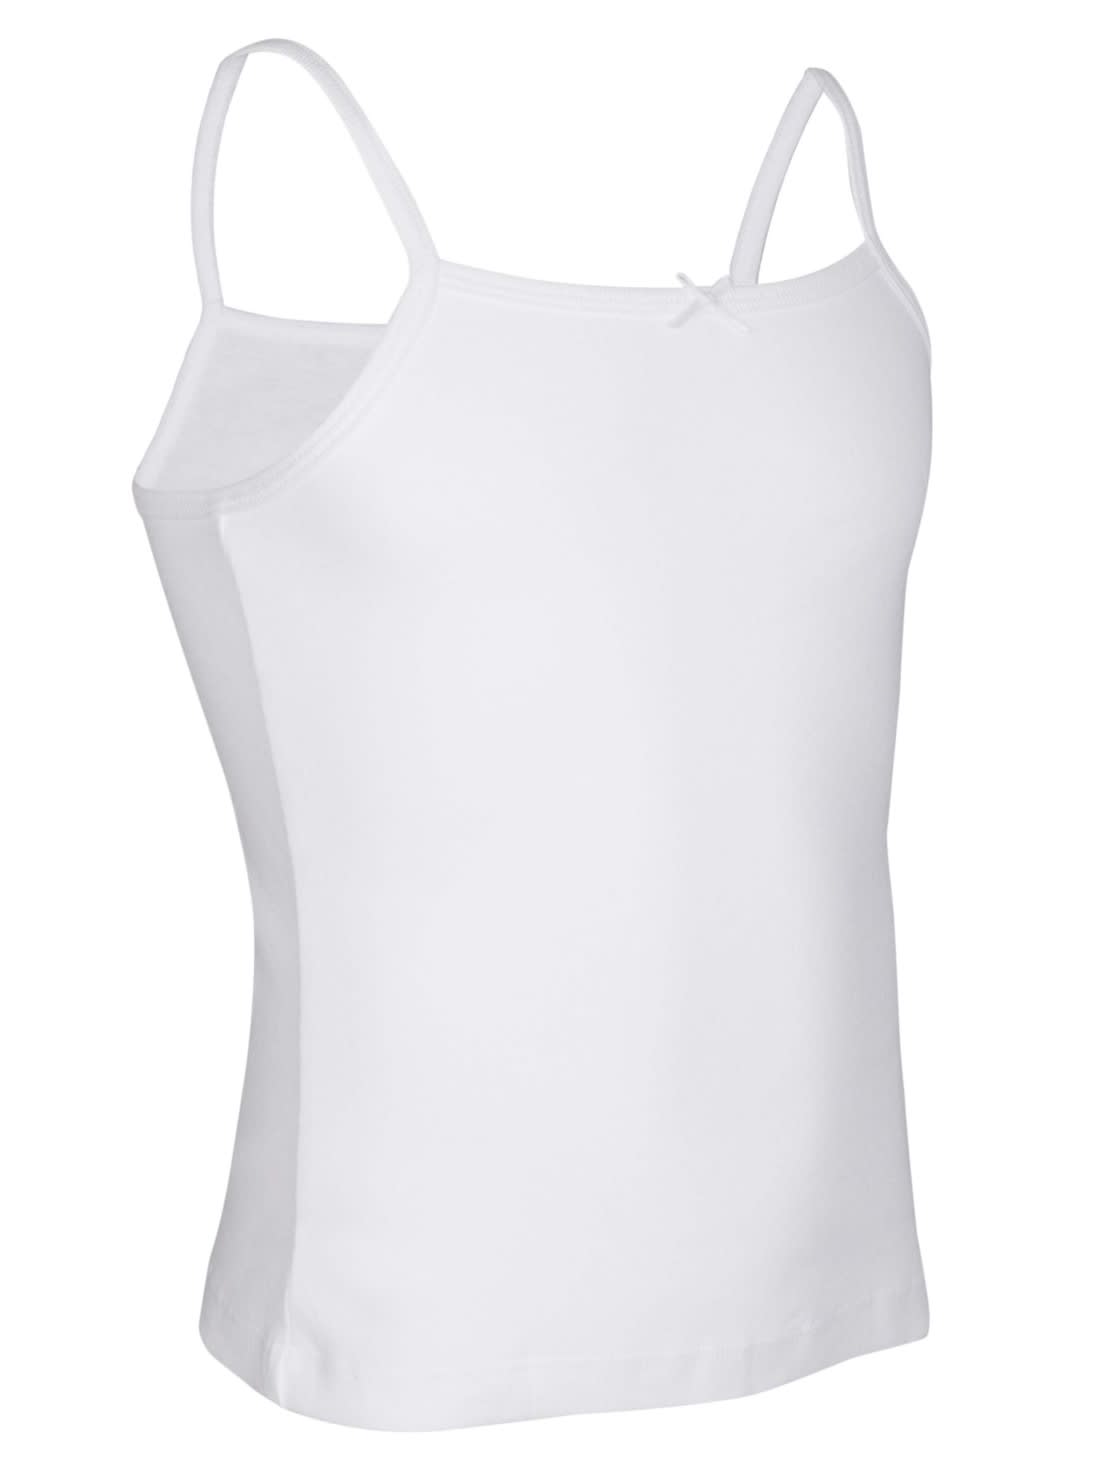 Buy Juniors Camisoles Girls Underwear SG04 White |Jockey India